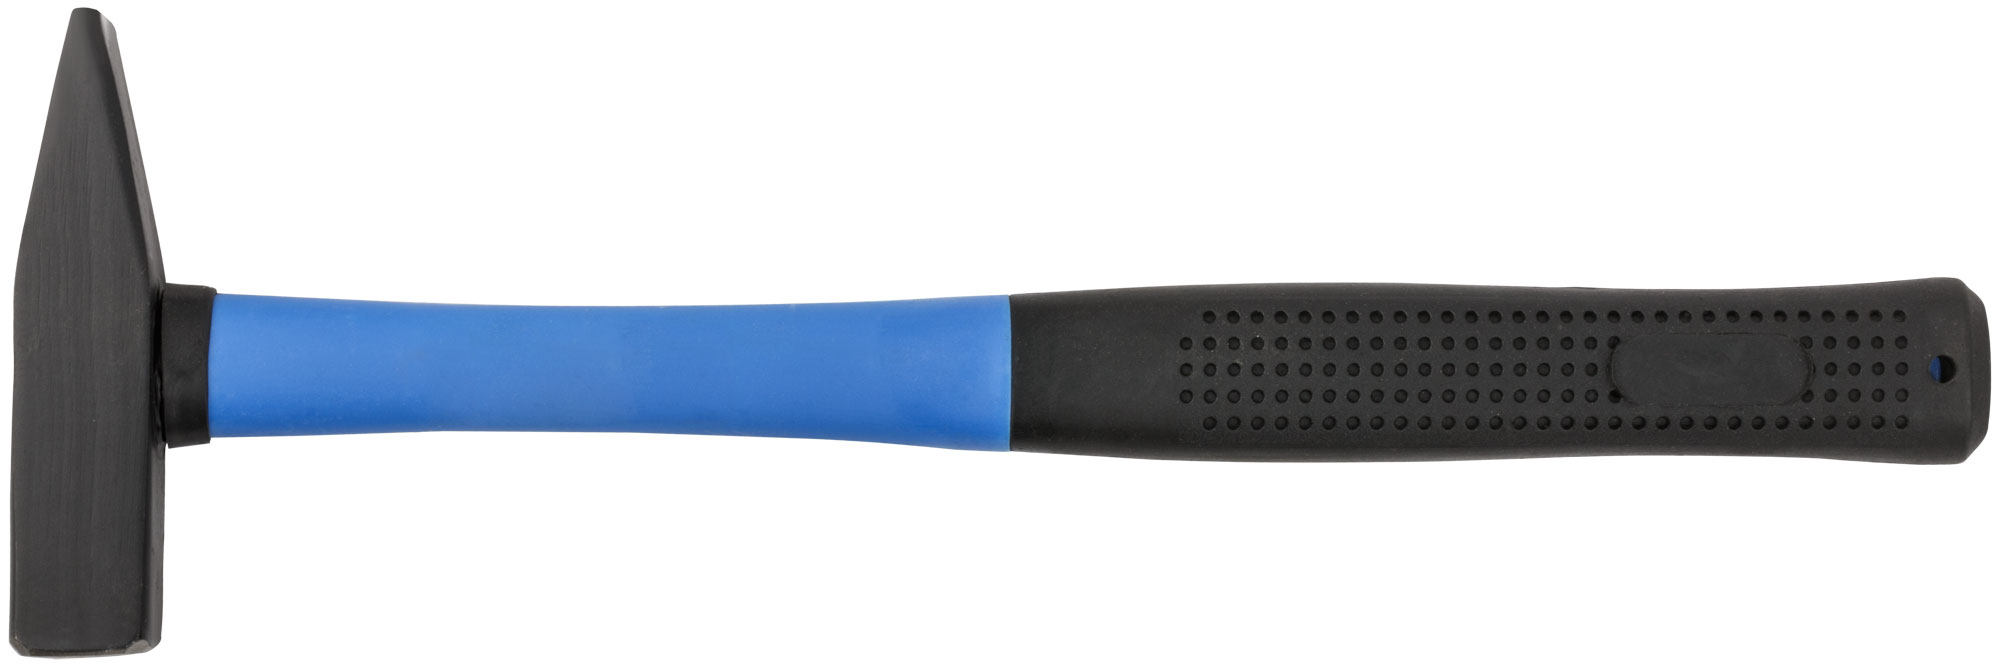 Молоток MOS стеклопластиковая ручка 500 гр. 44055М от Kotofoto